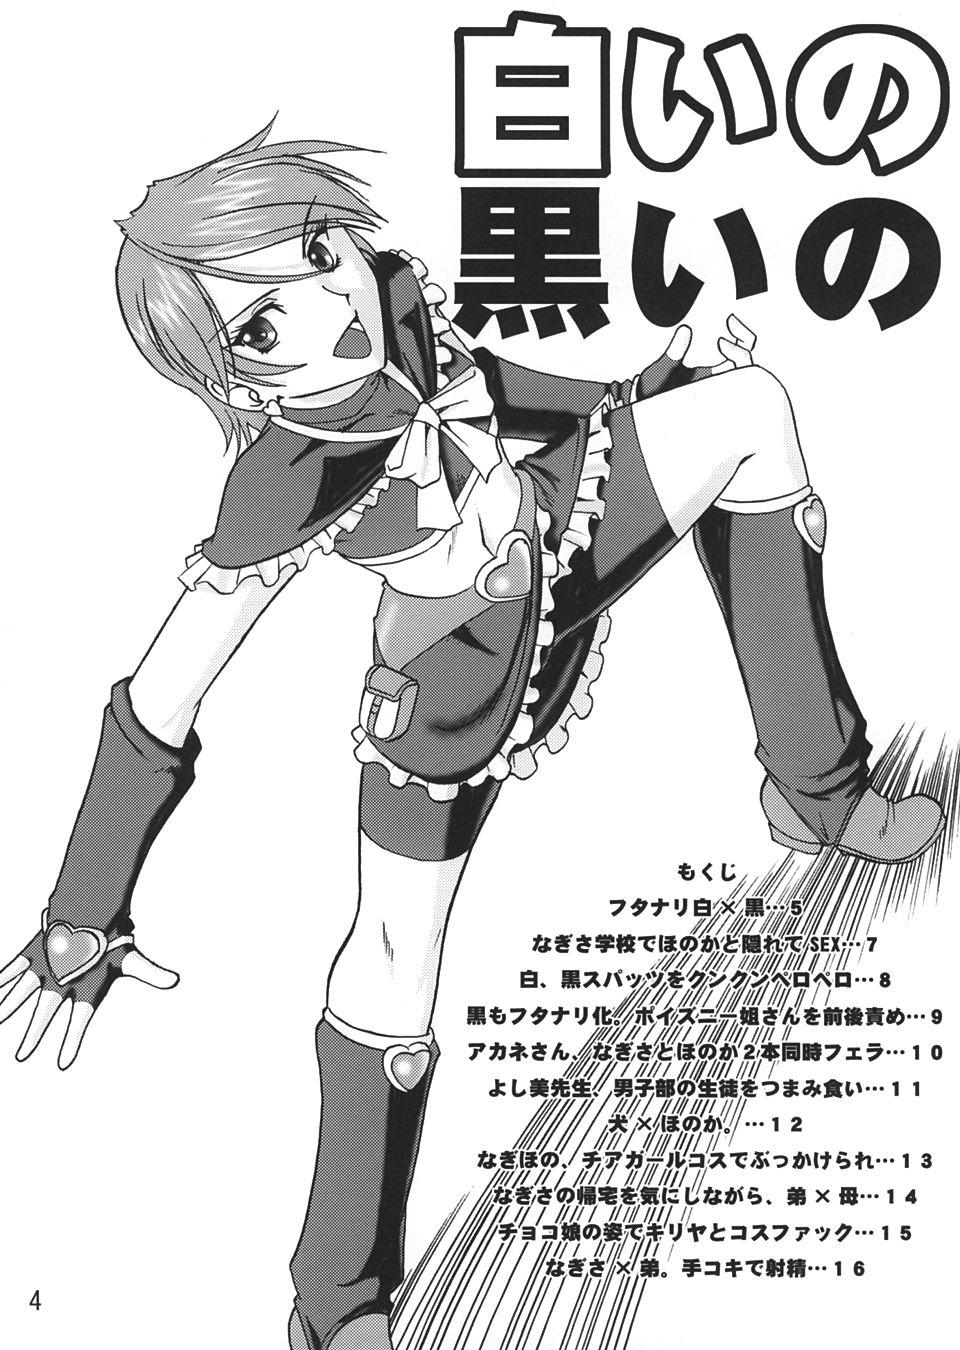 SEMEDAIN G WORKS vol.22 - Shiroi no Kuroi no 2